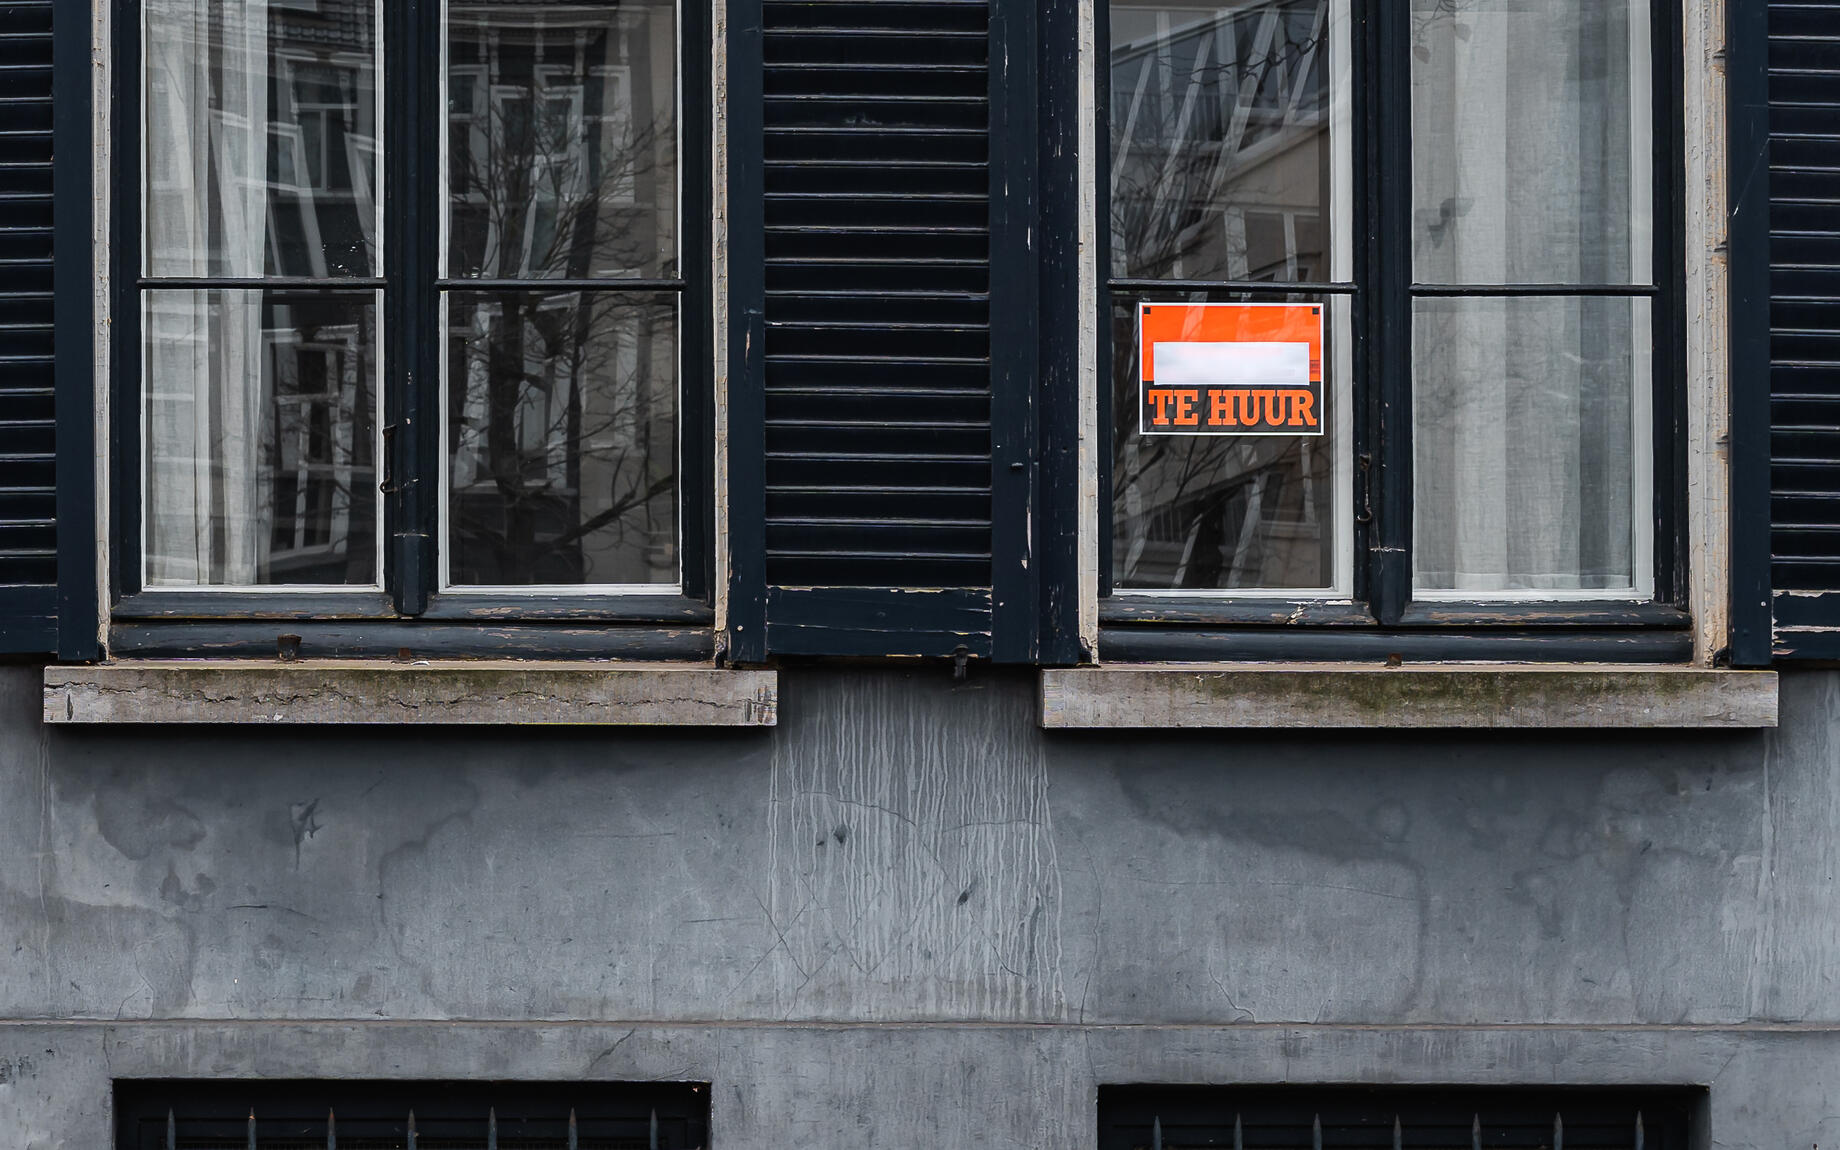 Papier met "te huur" hangt aan raam in Gent